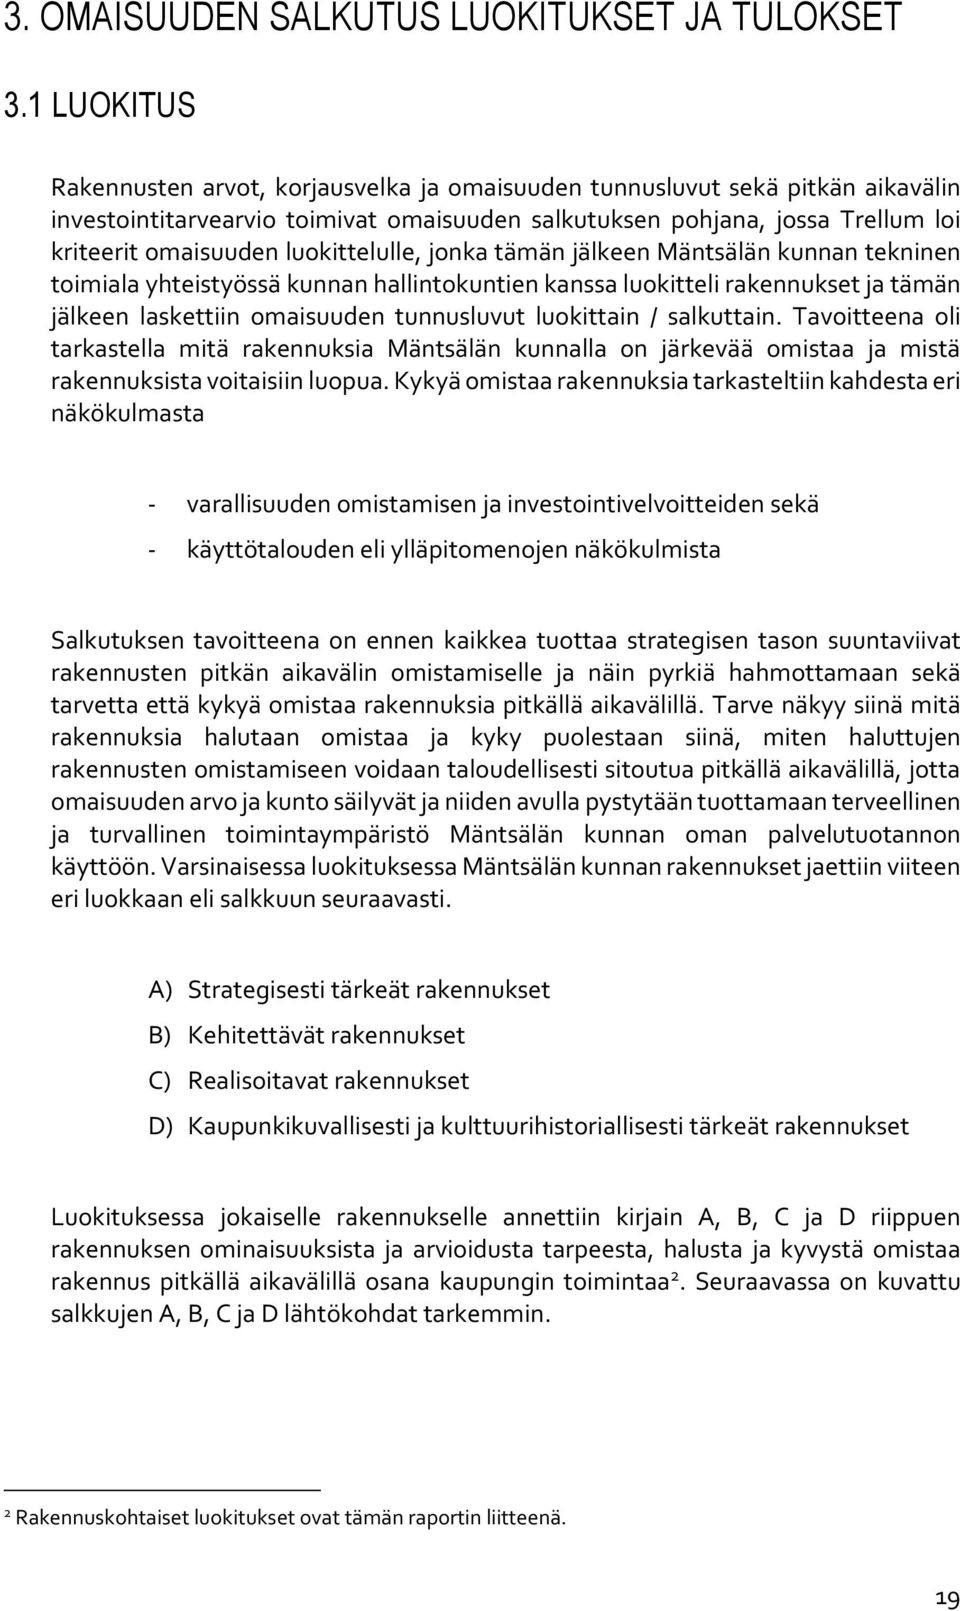 luokittelulle, jonka tämän jälkeen Mäntsälän kunnan tekninen toimiala yhteistyössä kunnan hallintokuntien kanssa luokitteli rakennukset ja tämän jälkeen laskettiin omaisuuden tunnusluvut luokittain /